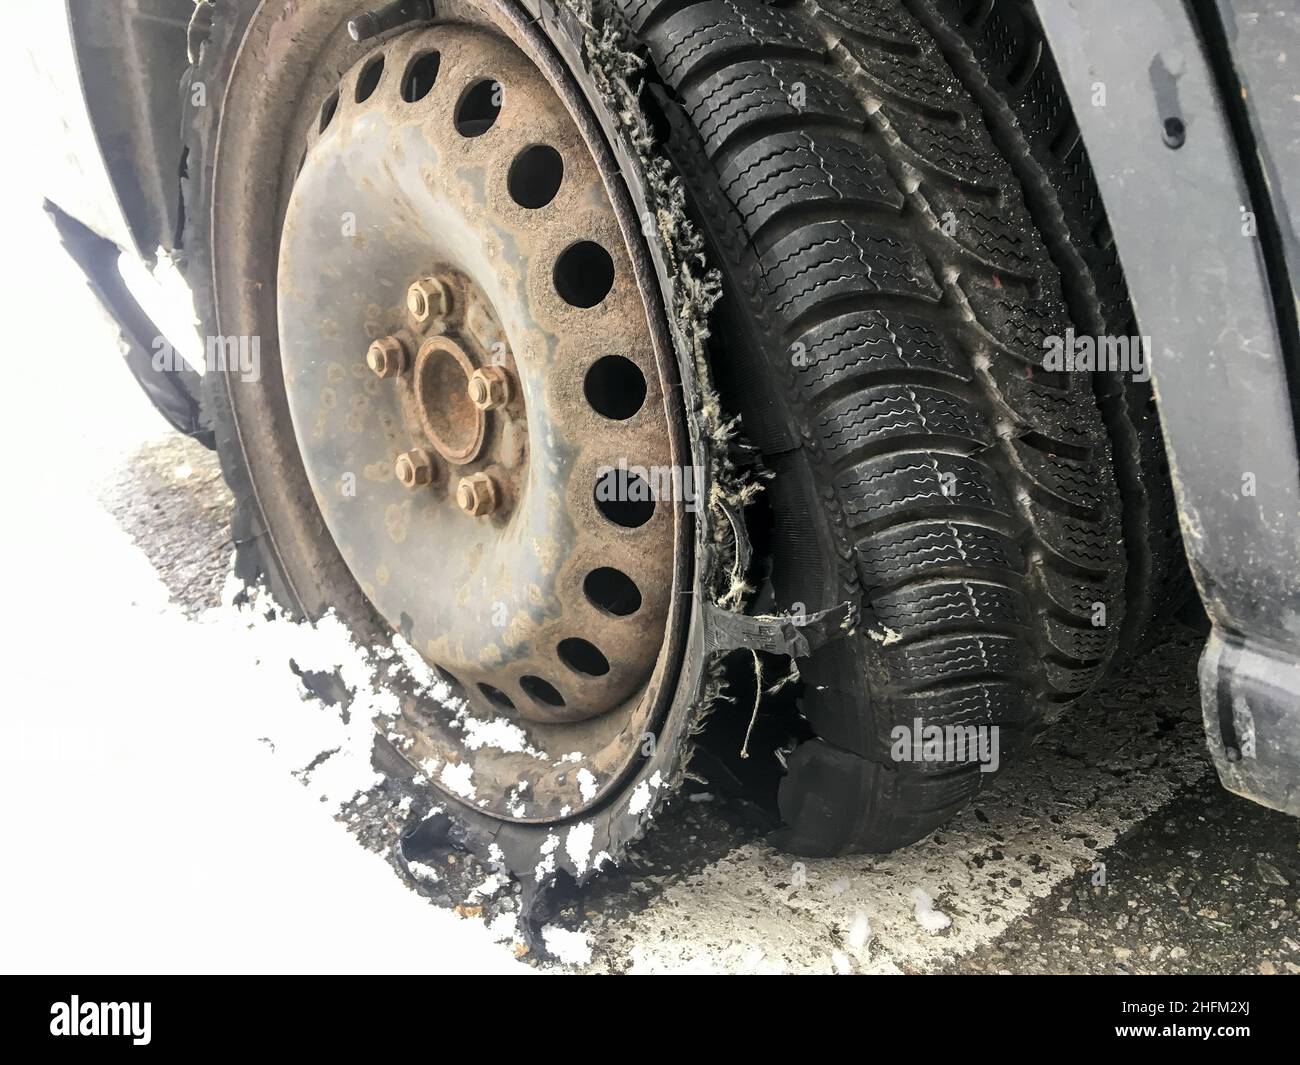 Détail de la roue rouillée avec pneu crevé et détruit sur le véhicule abandonné.Le pneu est complètement cassé avec la bande de roulement séparée. Banque D'Images